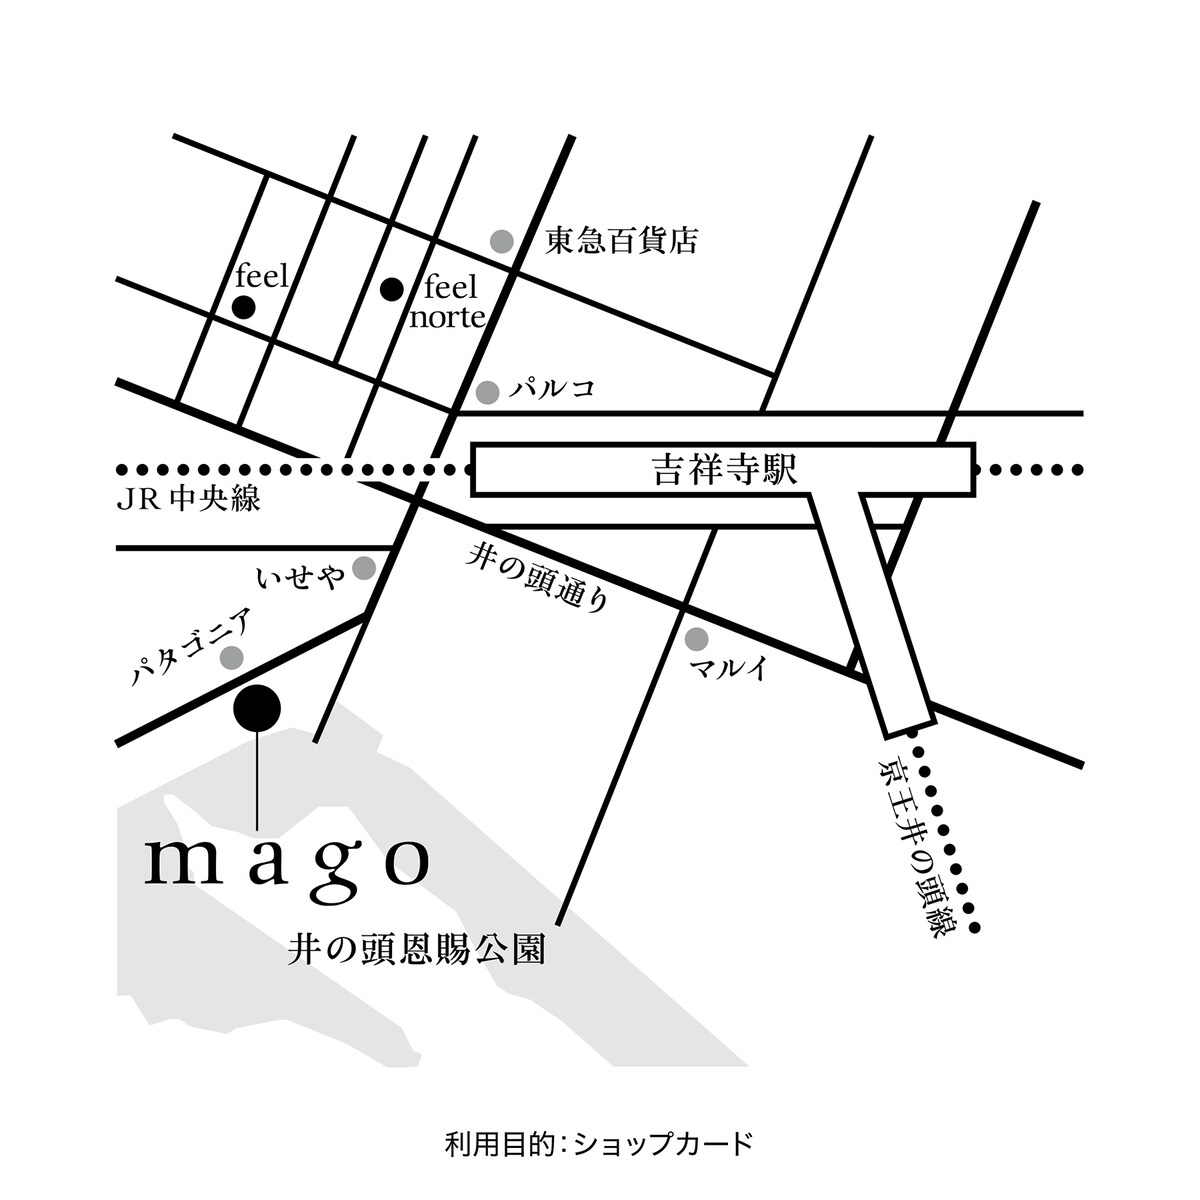 mago のマップ